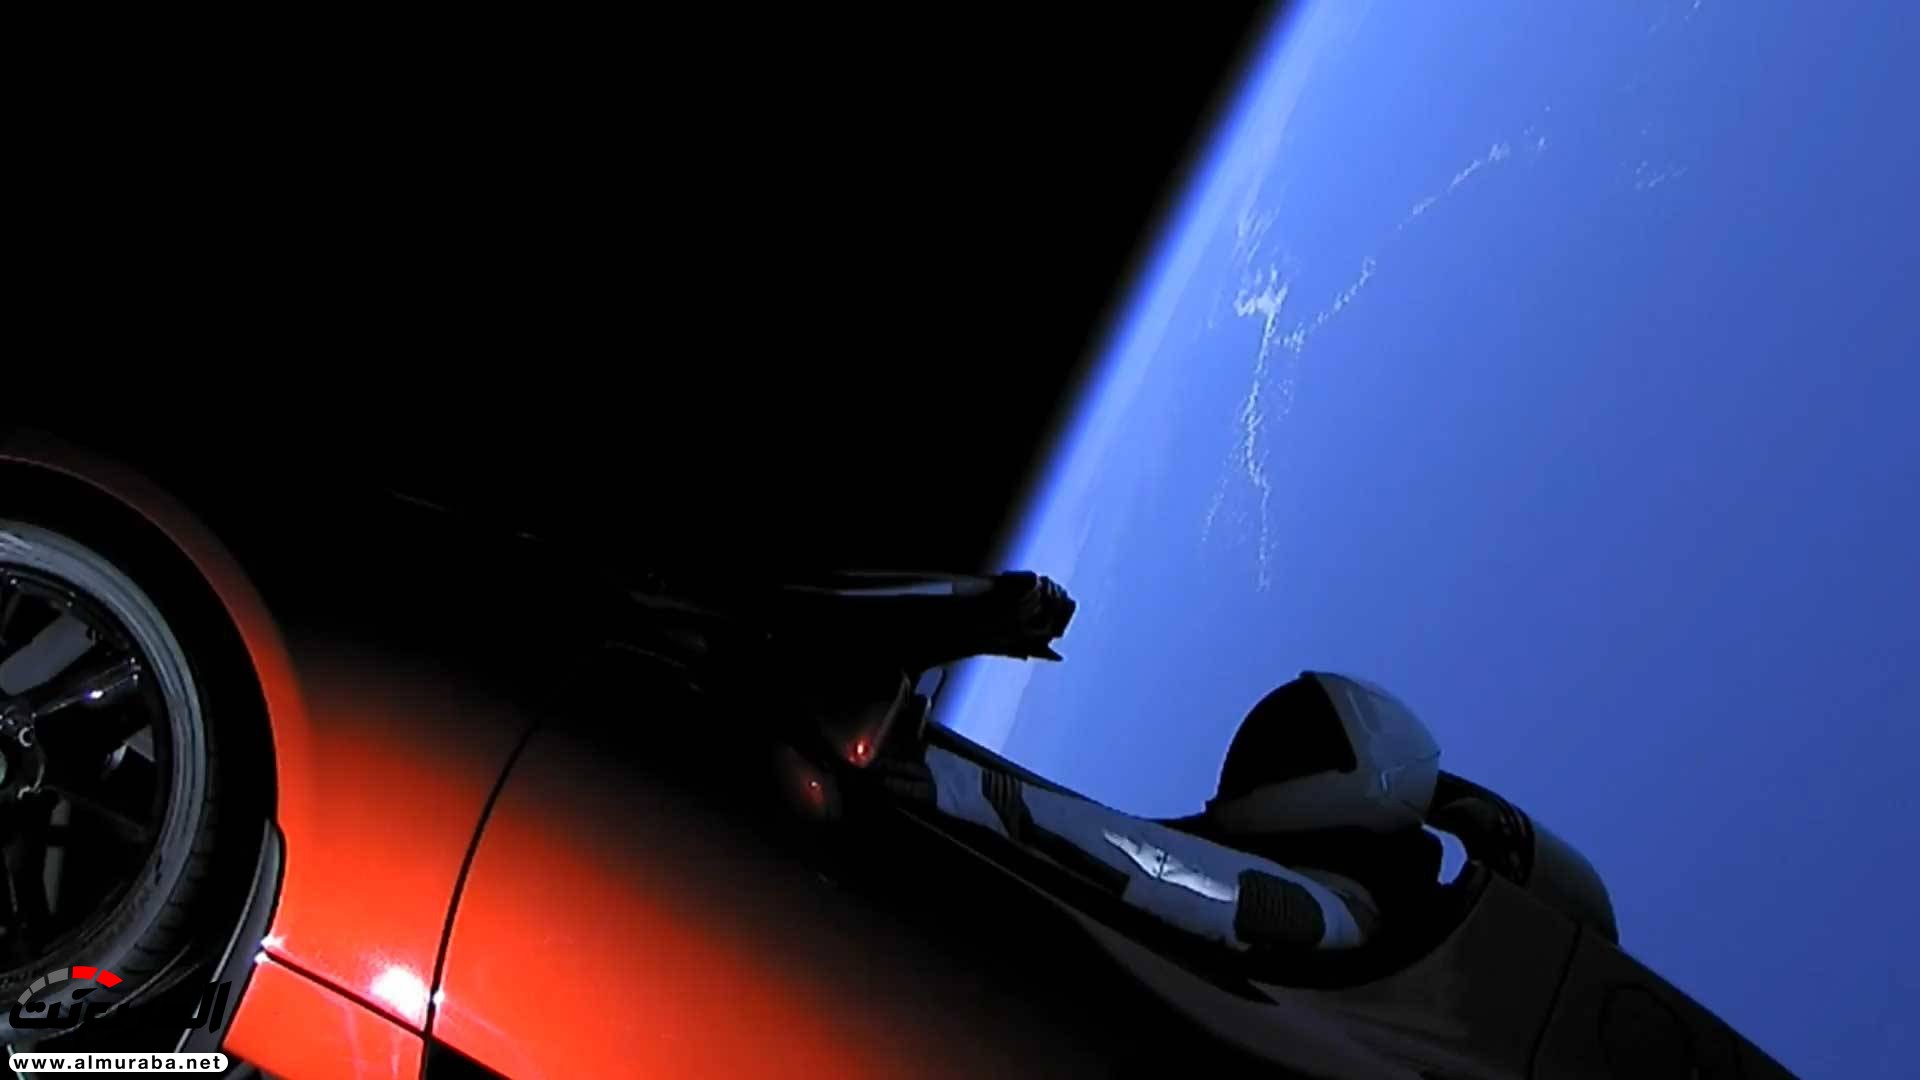 "بالفيديو والصور" إيلون ماسك يطلق تيسلا رودستر إلى المريخ في أقوى صاروخ بالعالم 13